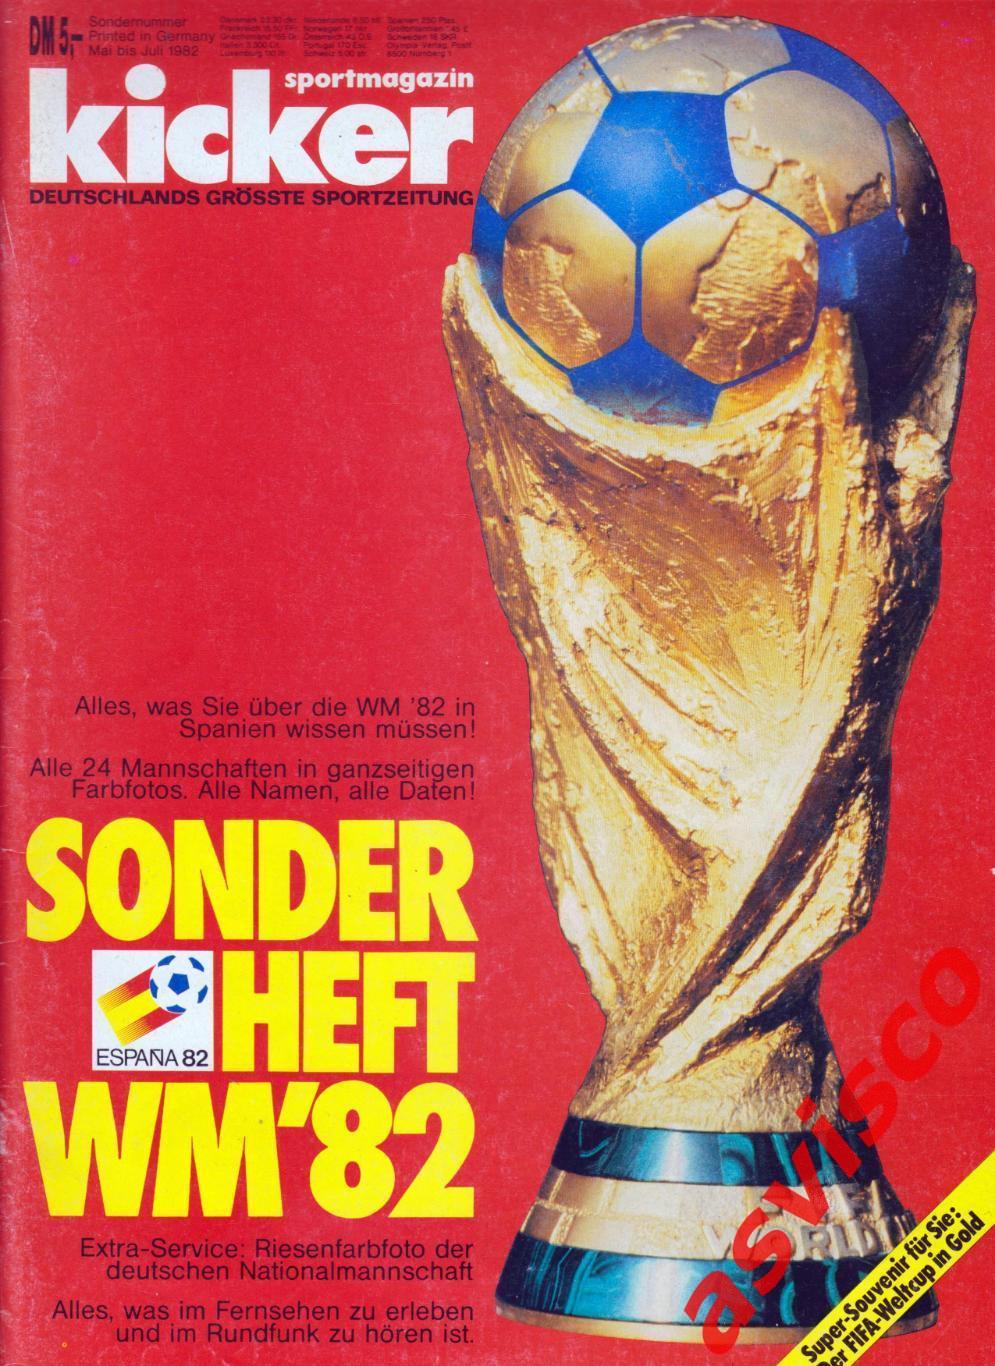 Чемпионат Мира по футболу в Испании 1982 года. Представление команд.